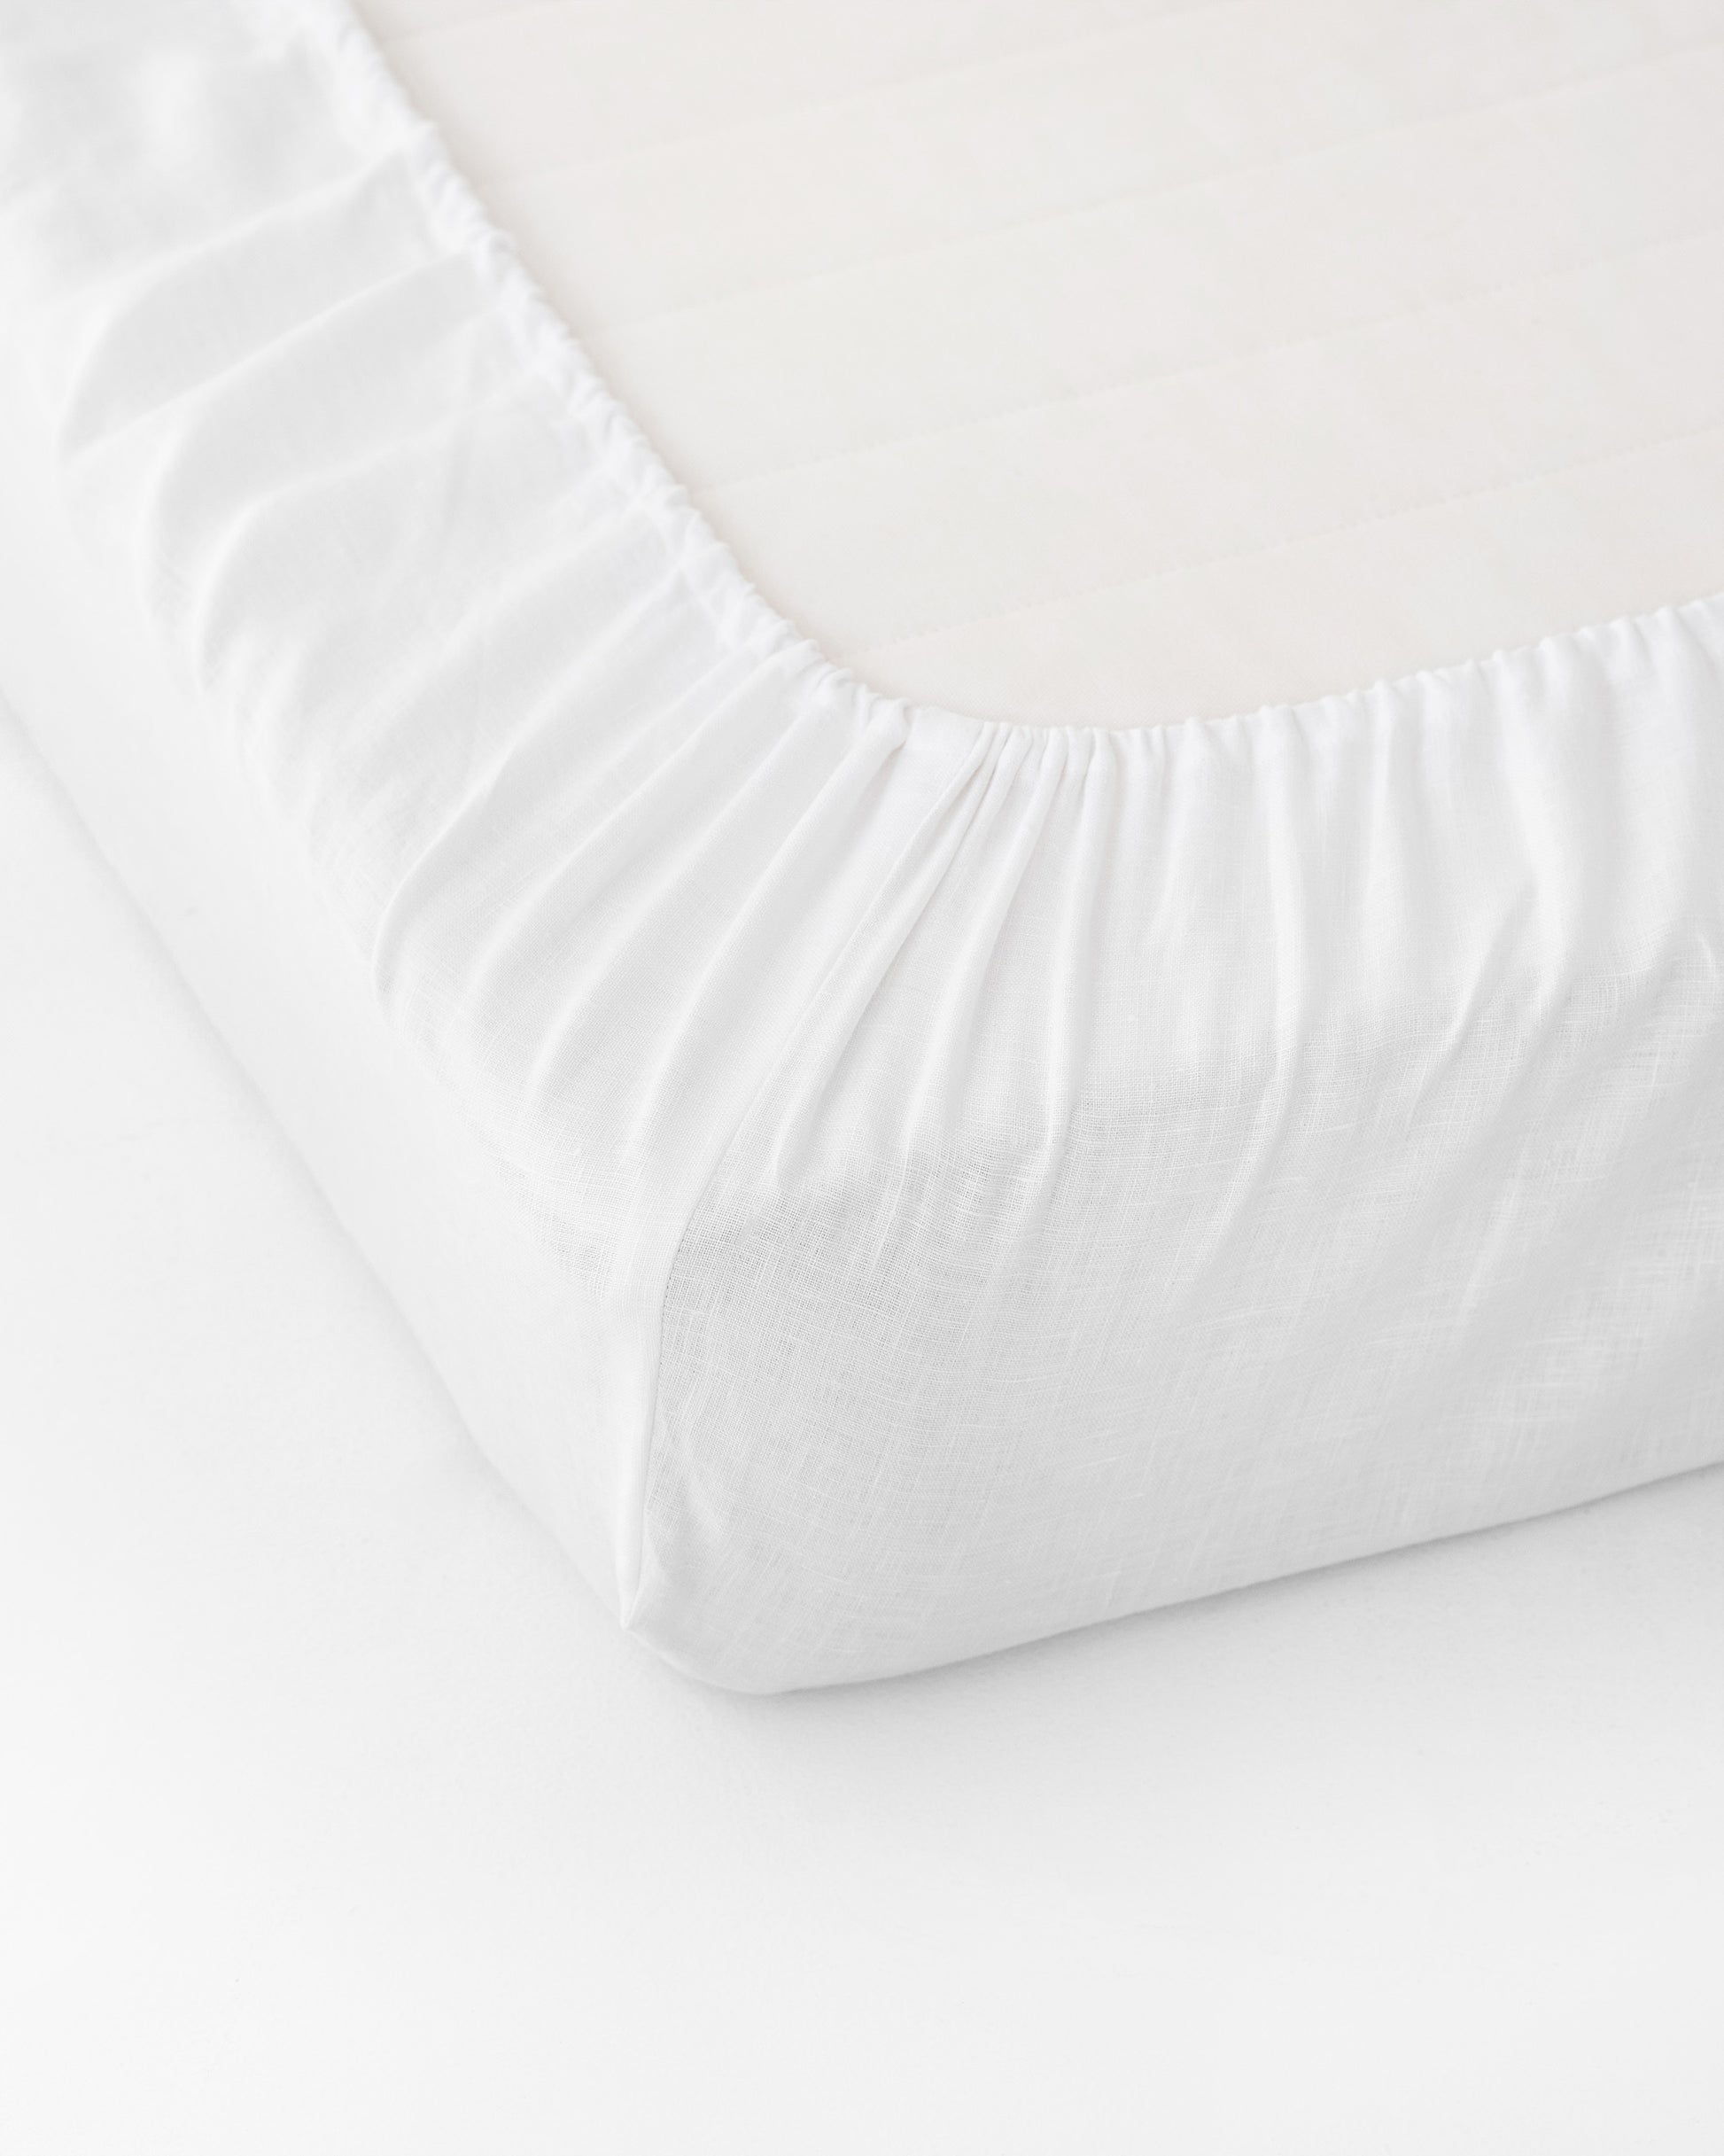 White linen fitted sheet - MagicLinen